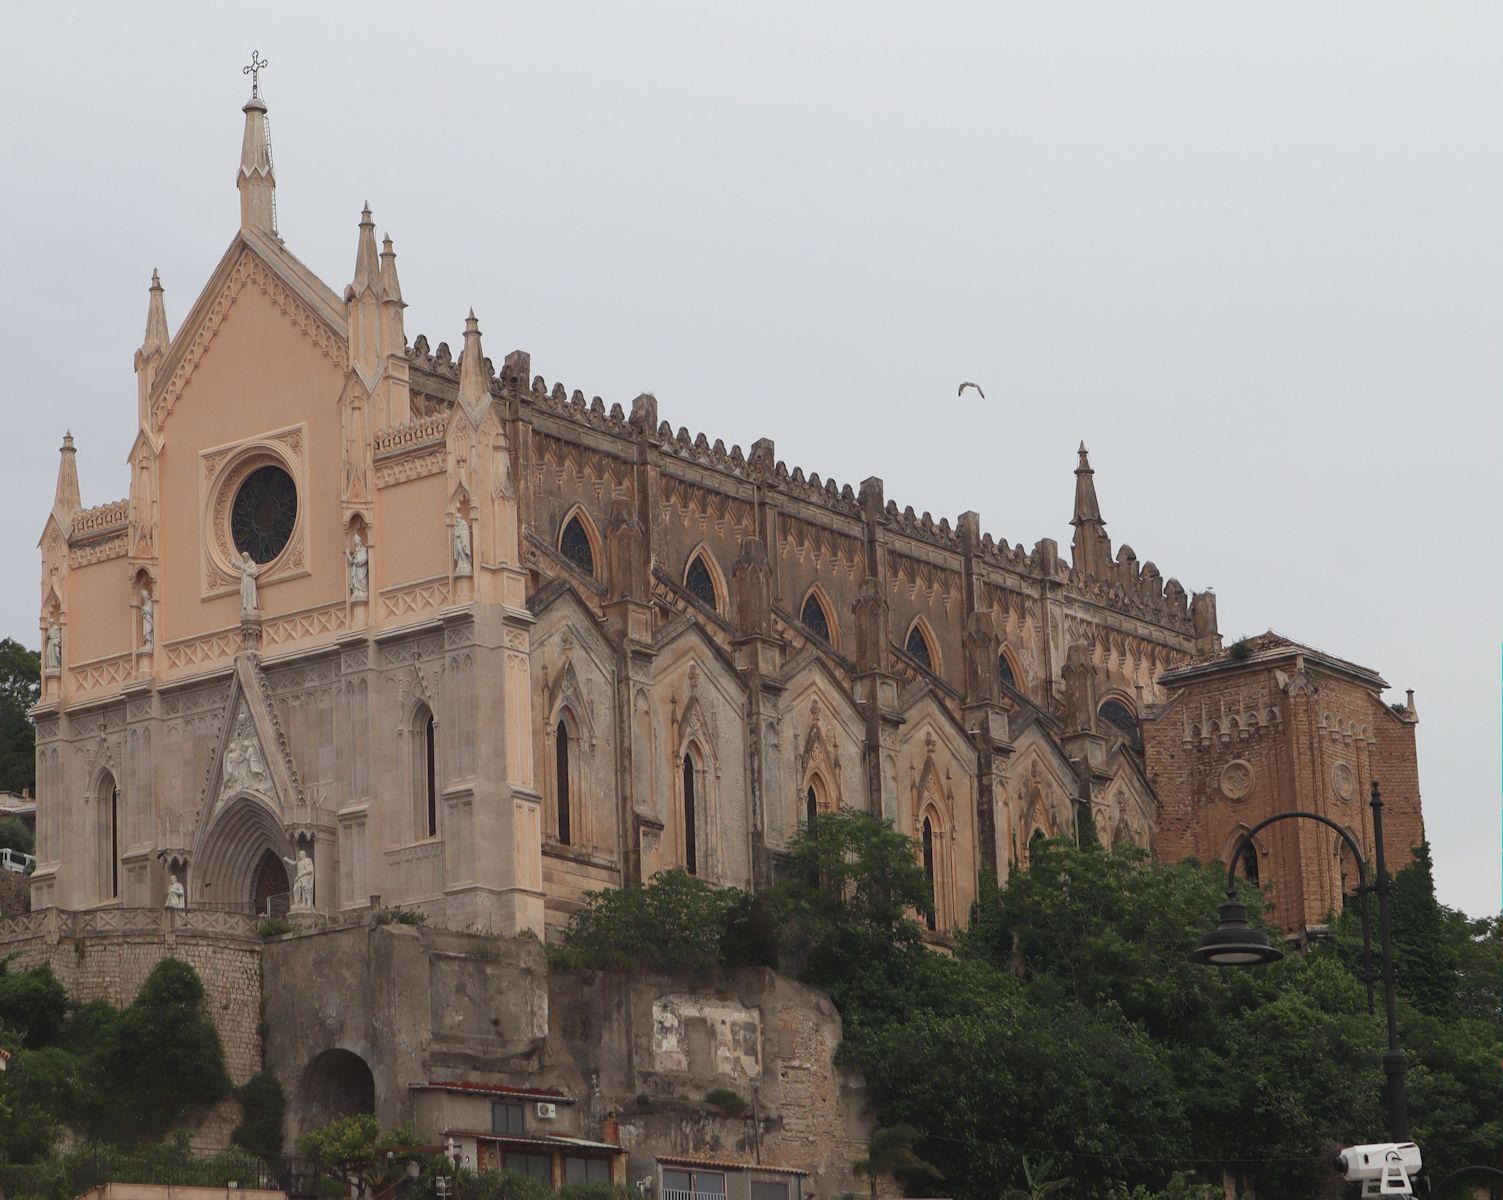 der monumentale „Tempel des Franziskus” in Gaeta, gebautab 1283, umgestaltet in den 1850-er Jahren, errichtet an der Stelle des 1222 von Franziskus von Assisi gegründeten Klosters